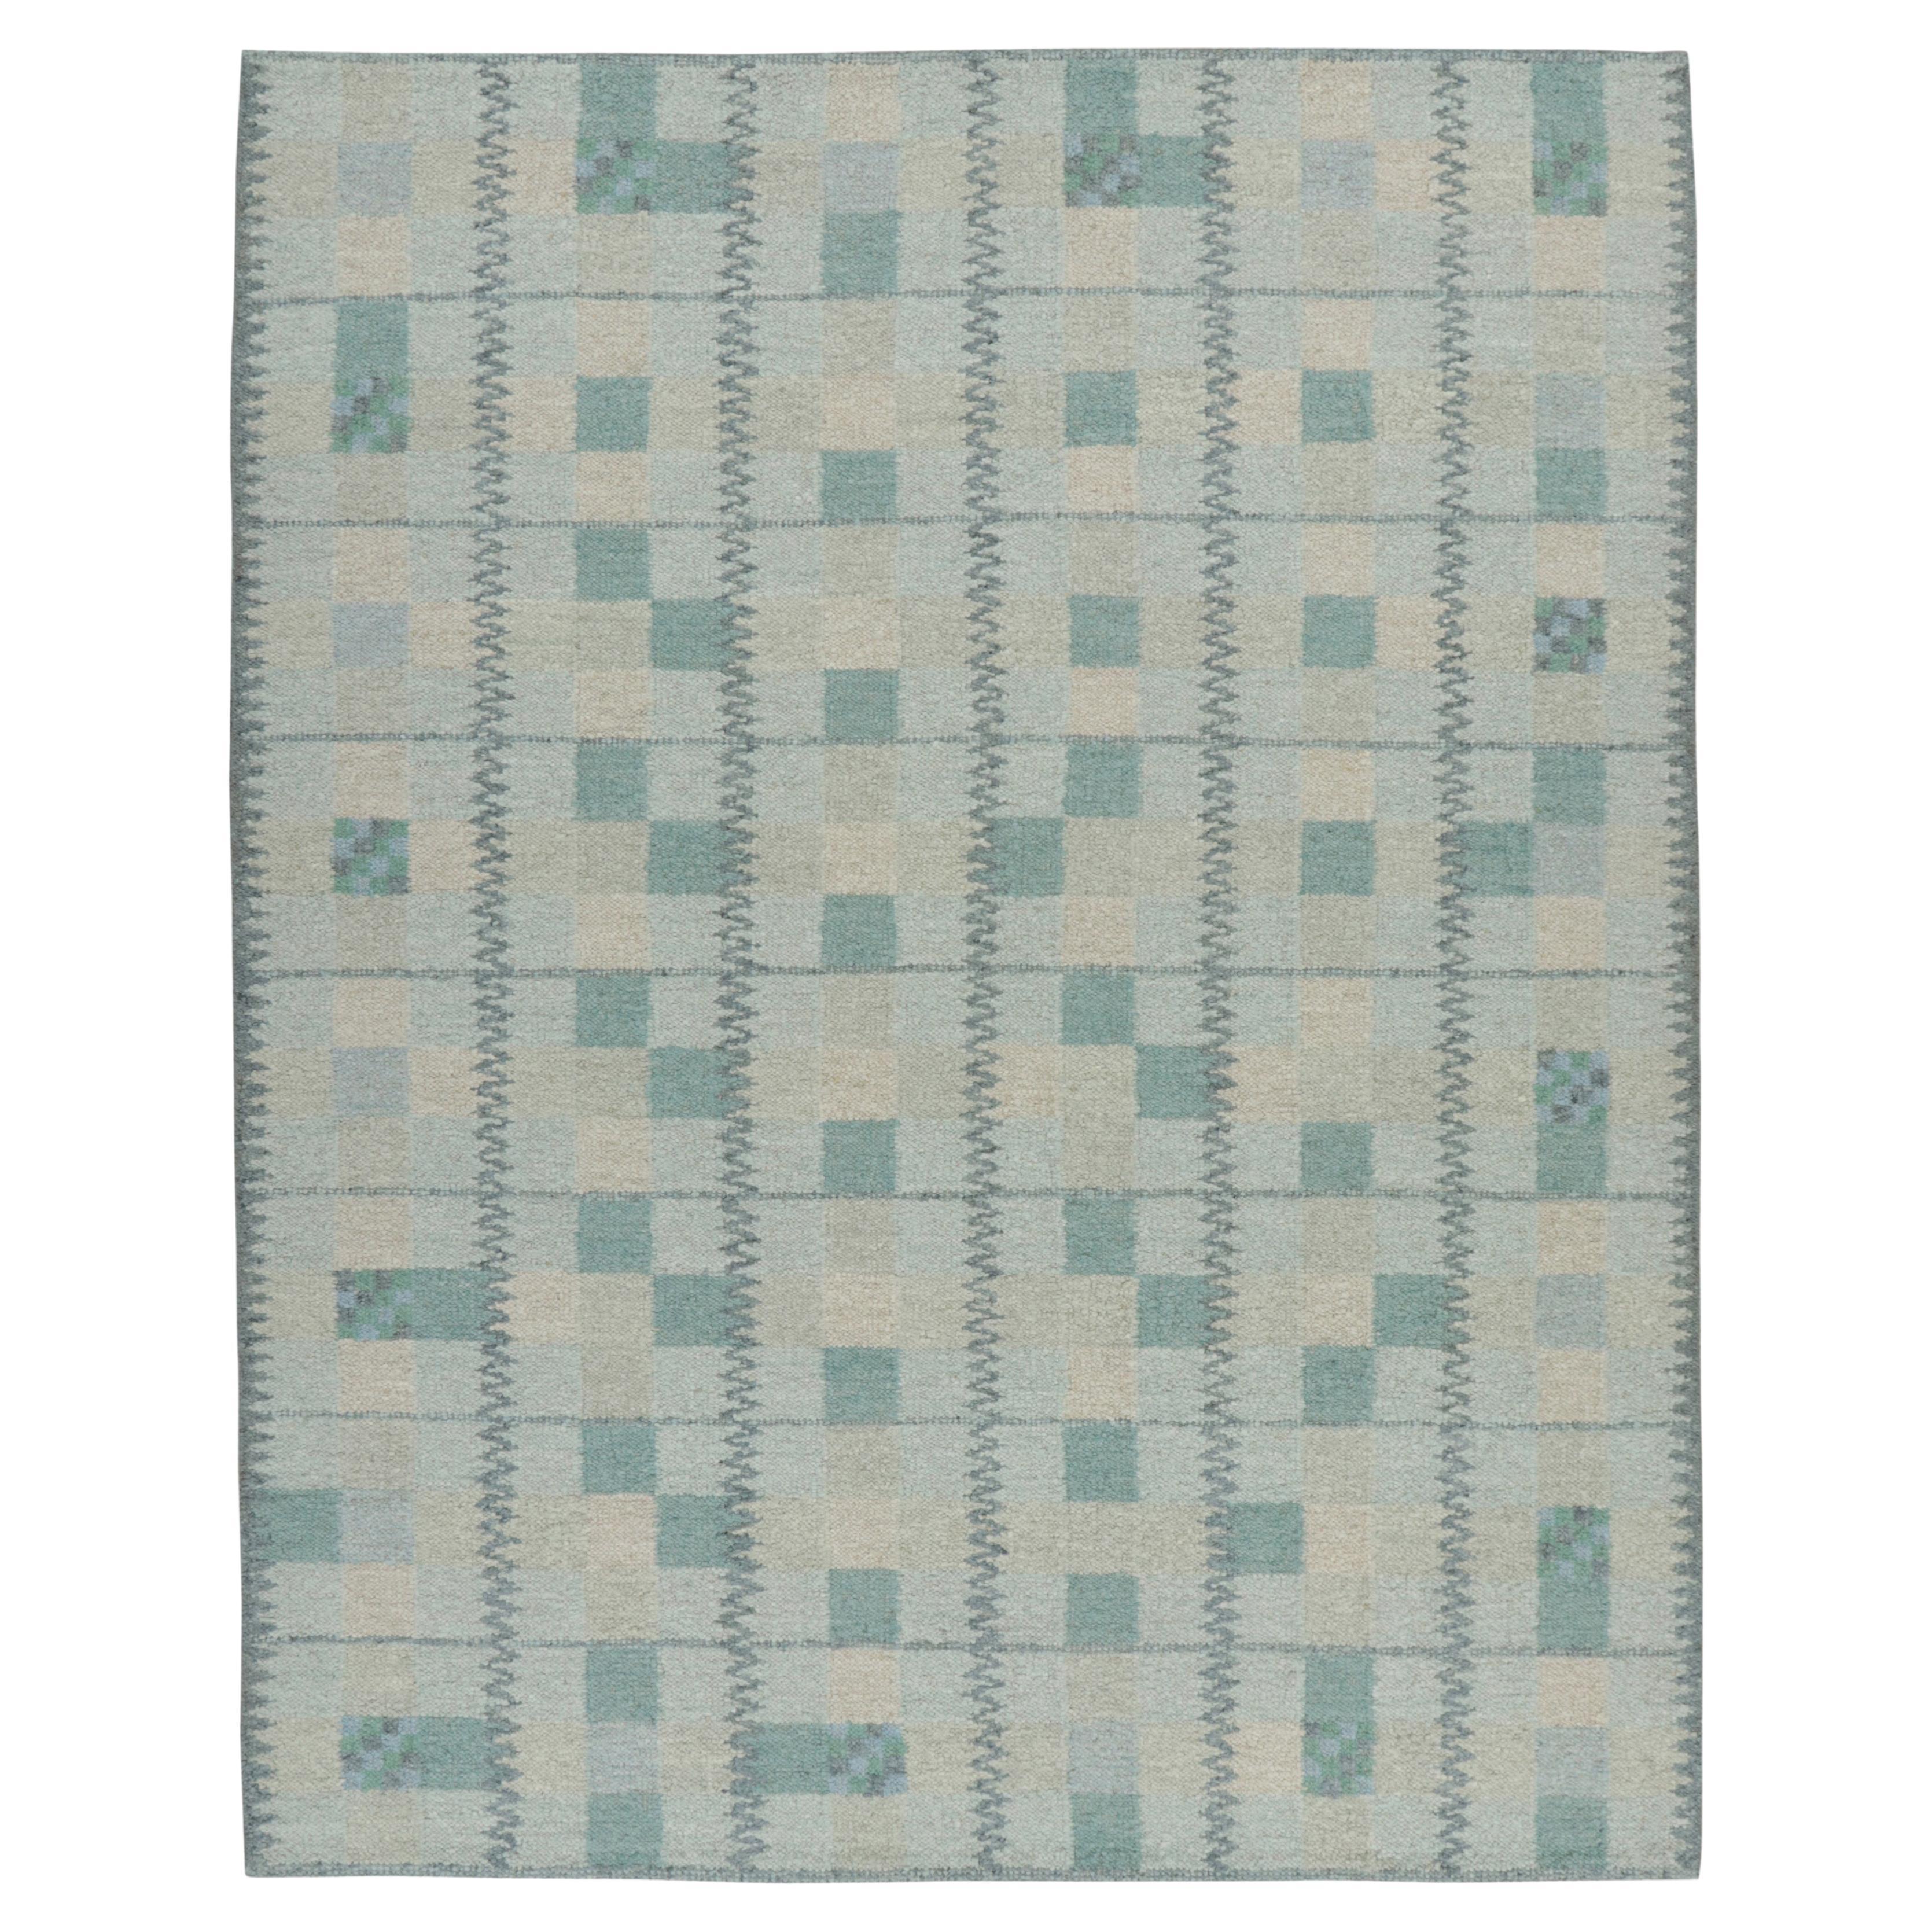 Rug & Kilim's Scandinavian Style Rug in Teal Blue Tones with Geometric Patterns (Tapis de style scandinave dans les tons bleu sarcelle avec des motifs géométriques) en vente